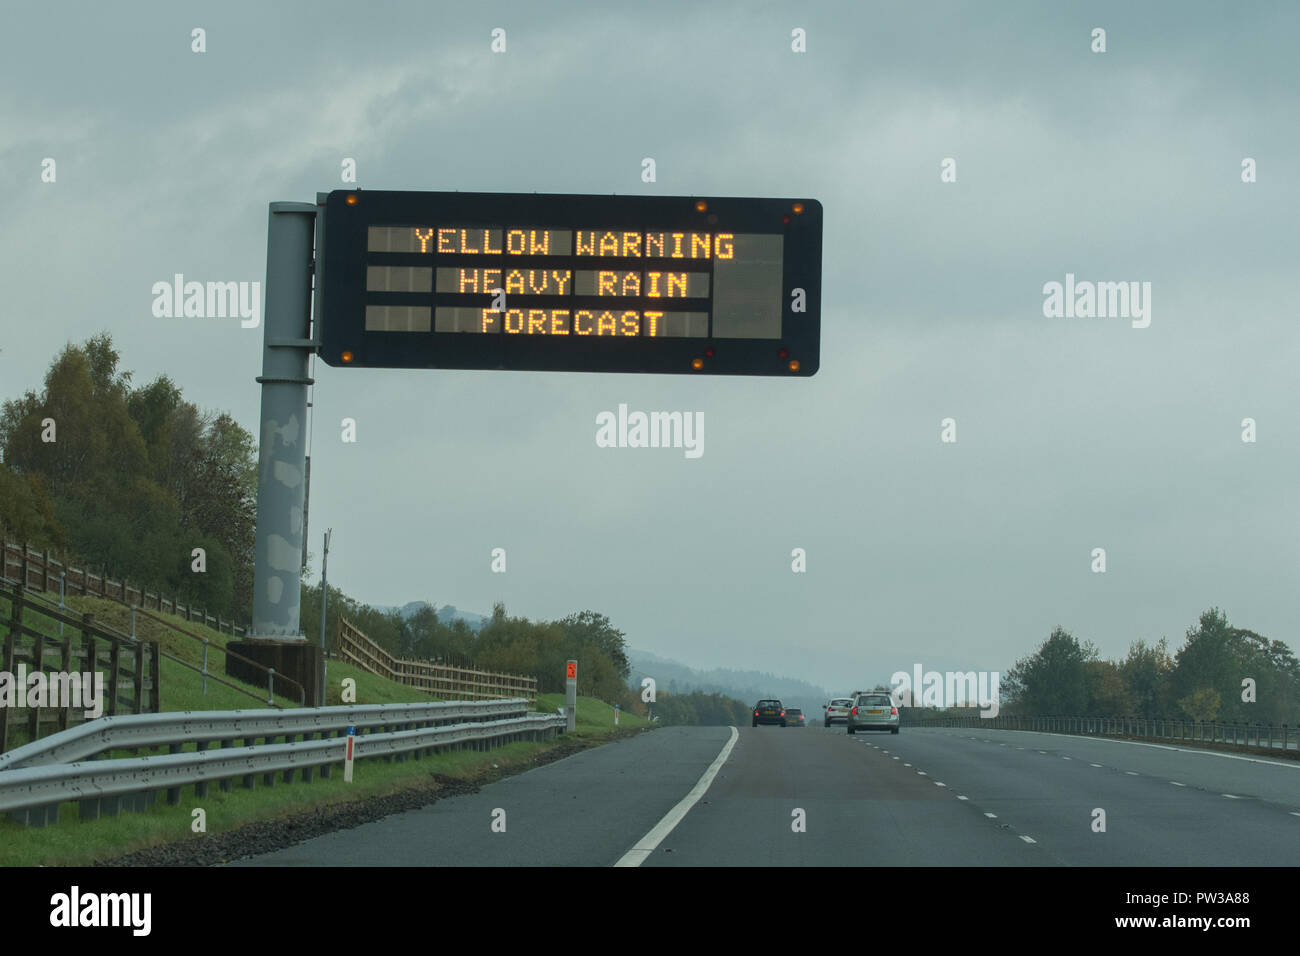 Les fortes pluies d'avertissement jaune signe prévisions sur autoroute Ecosse UK Banque D'Images